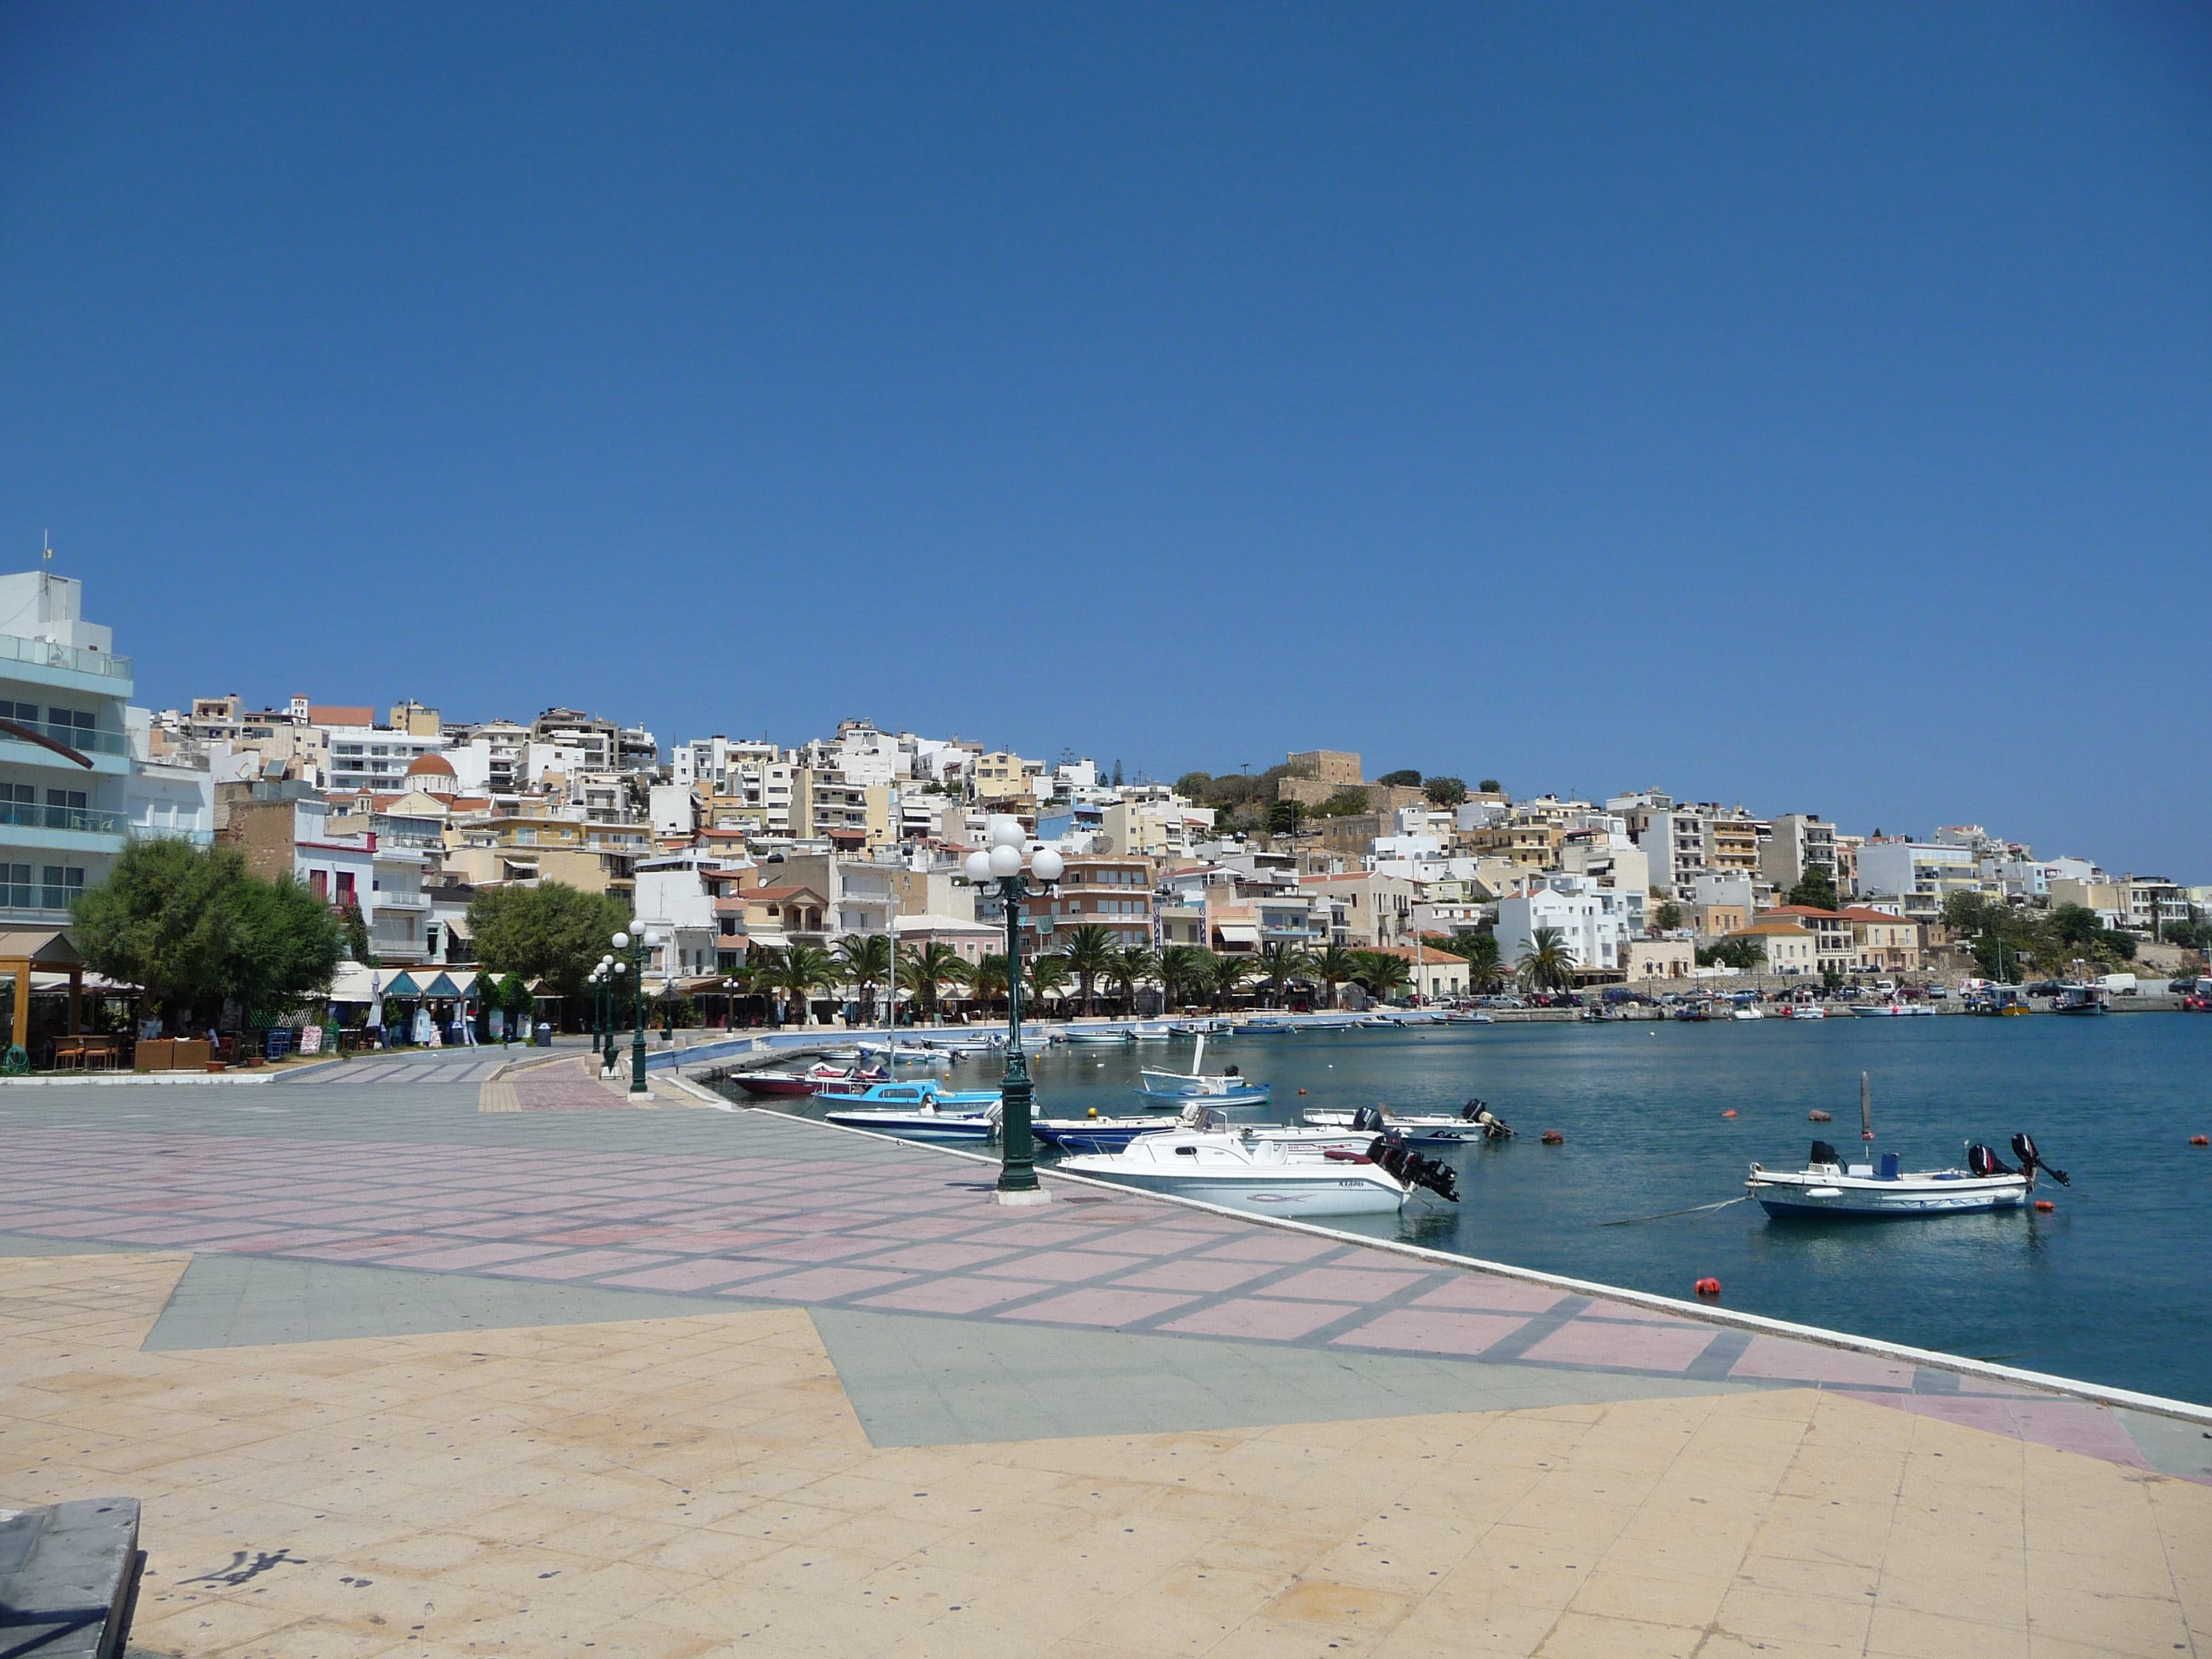 East Crete – Lasithi, Spinalonga, Aghios Nikolaos